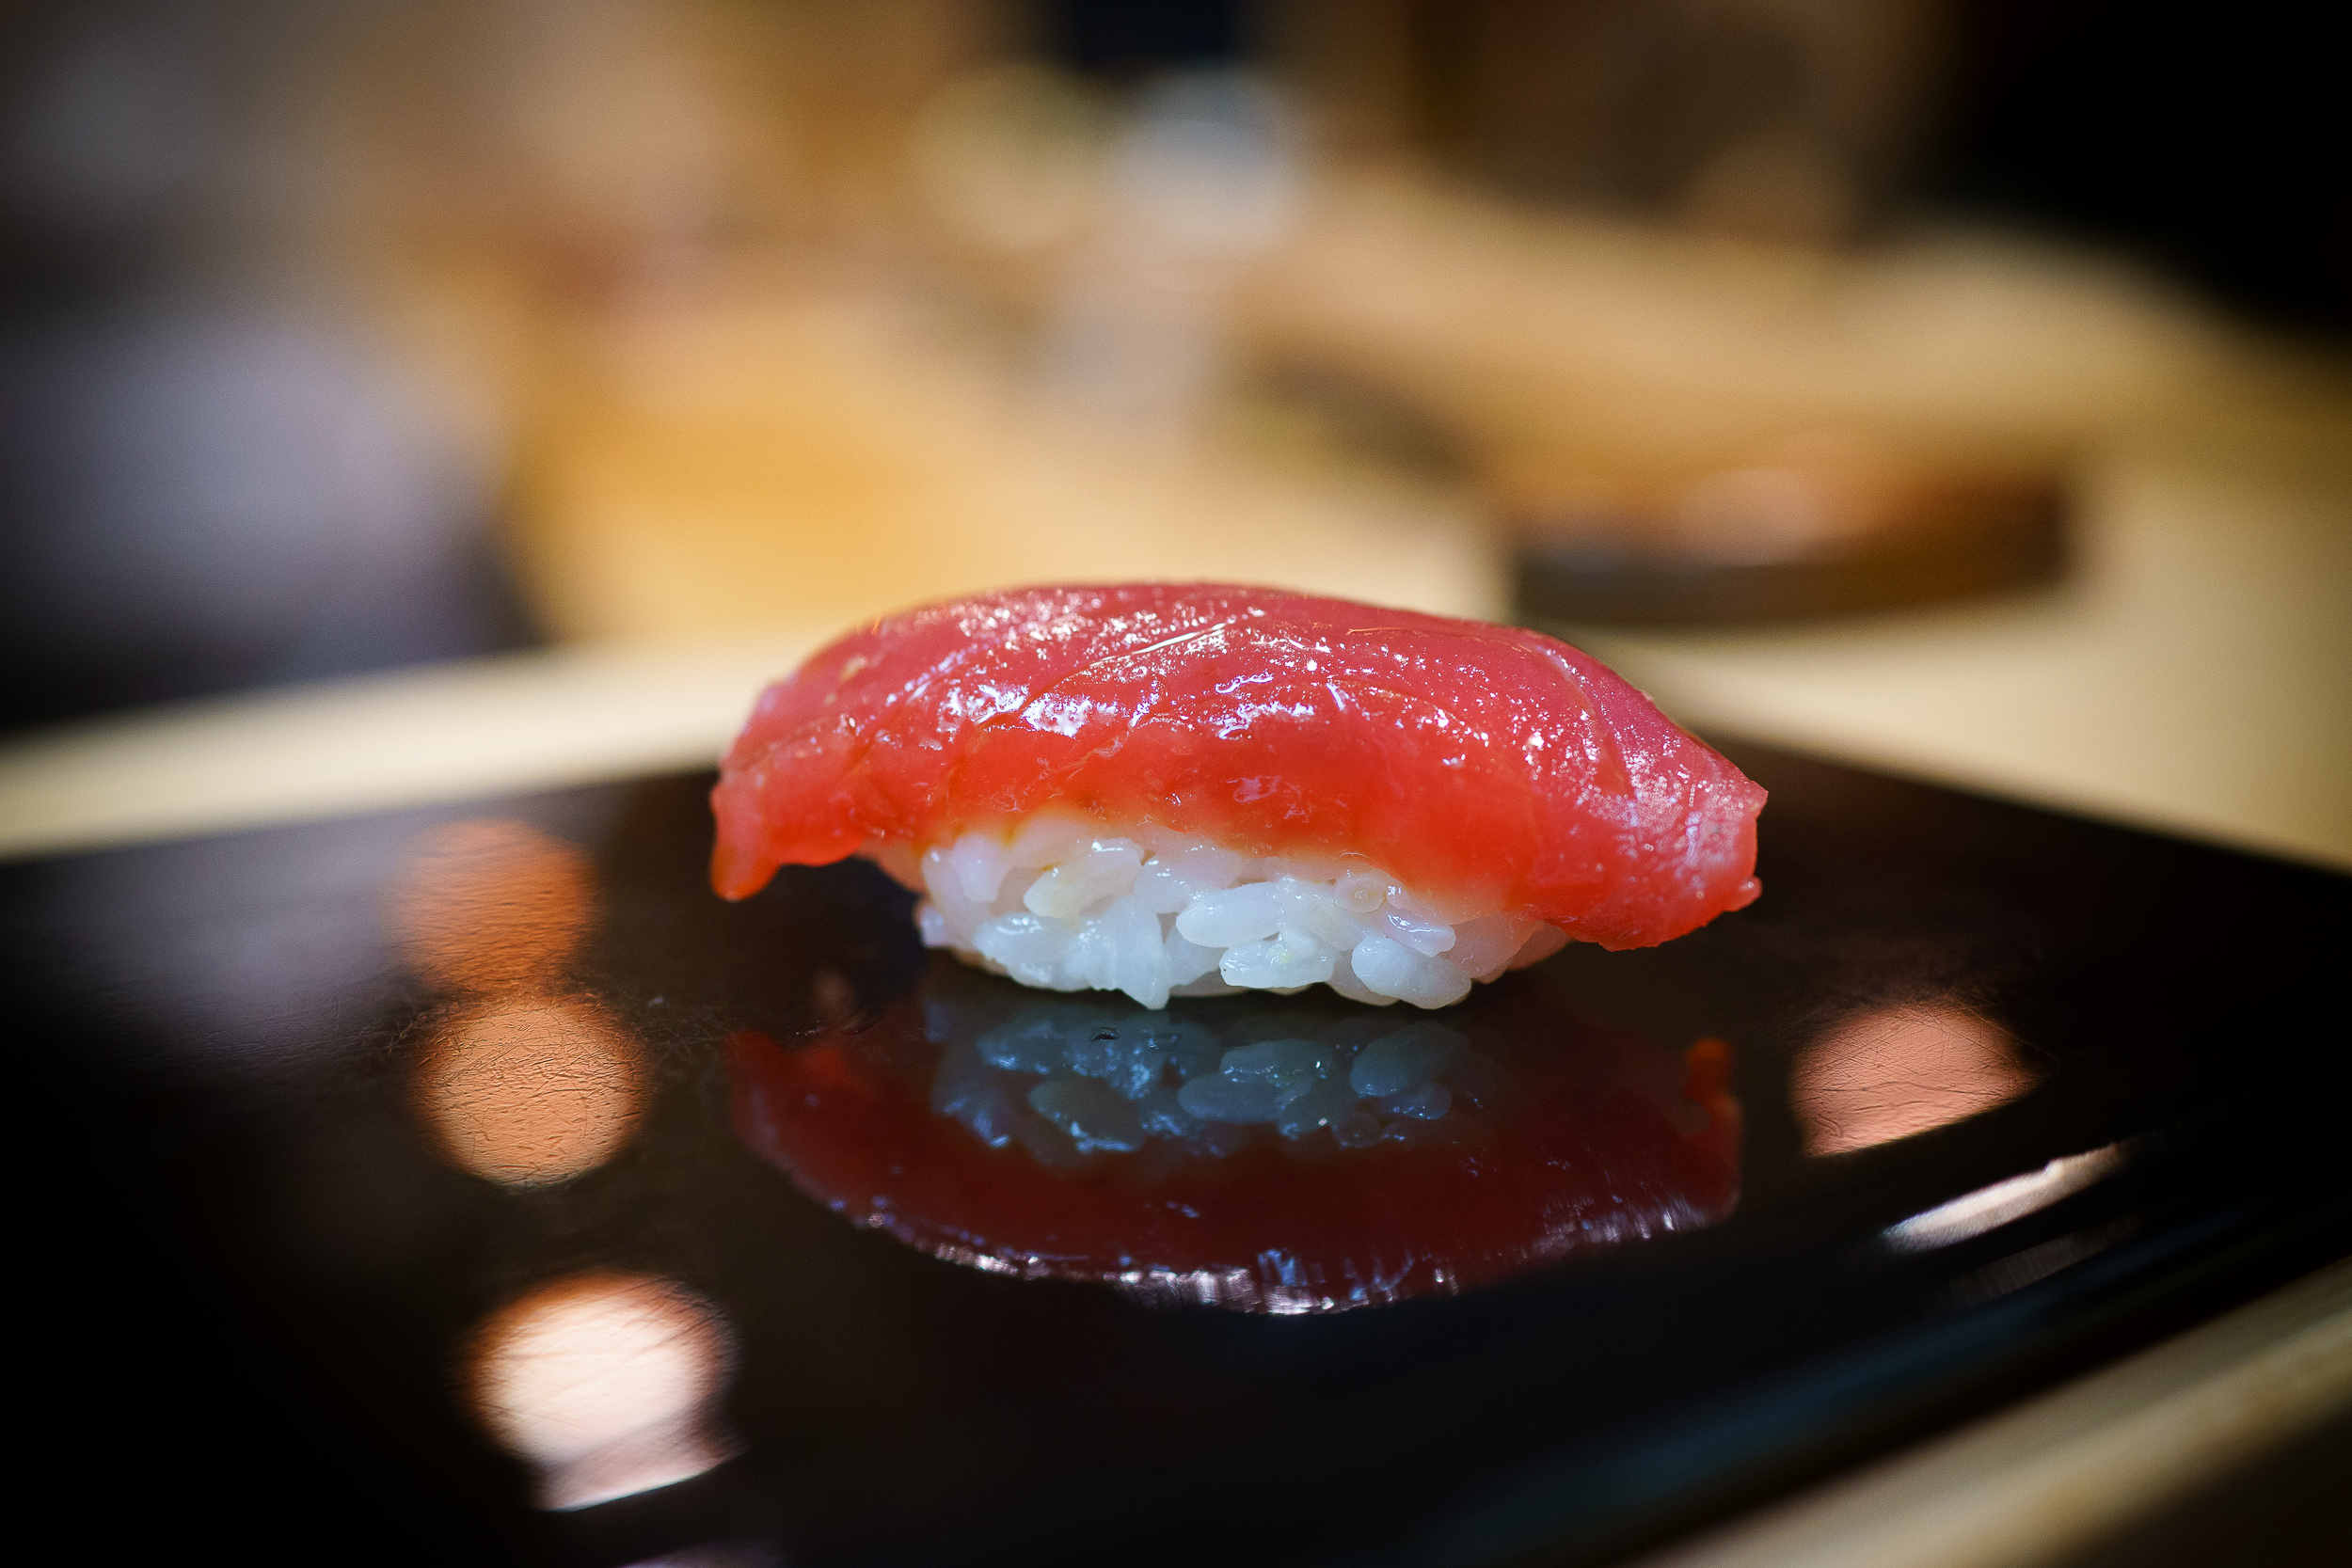 5th Course: Akami (lean tuna)